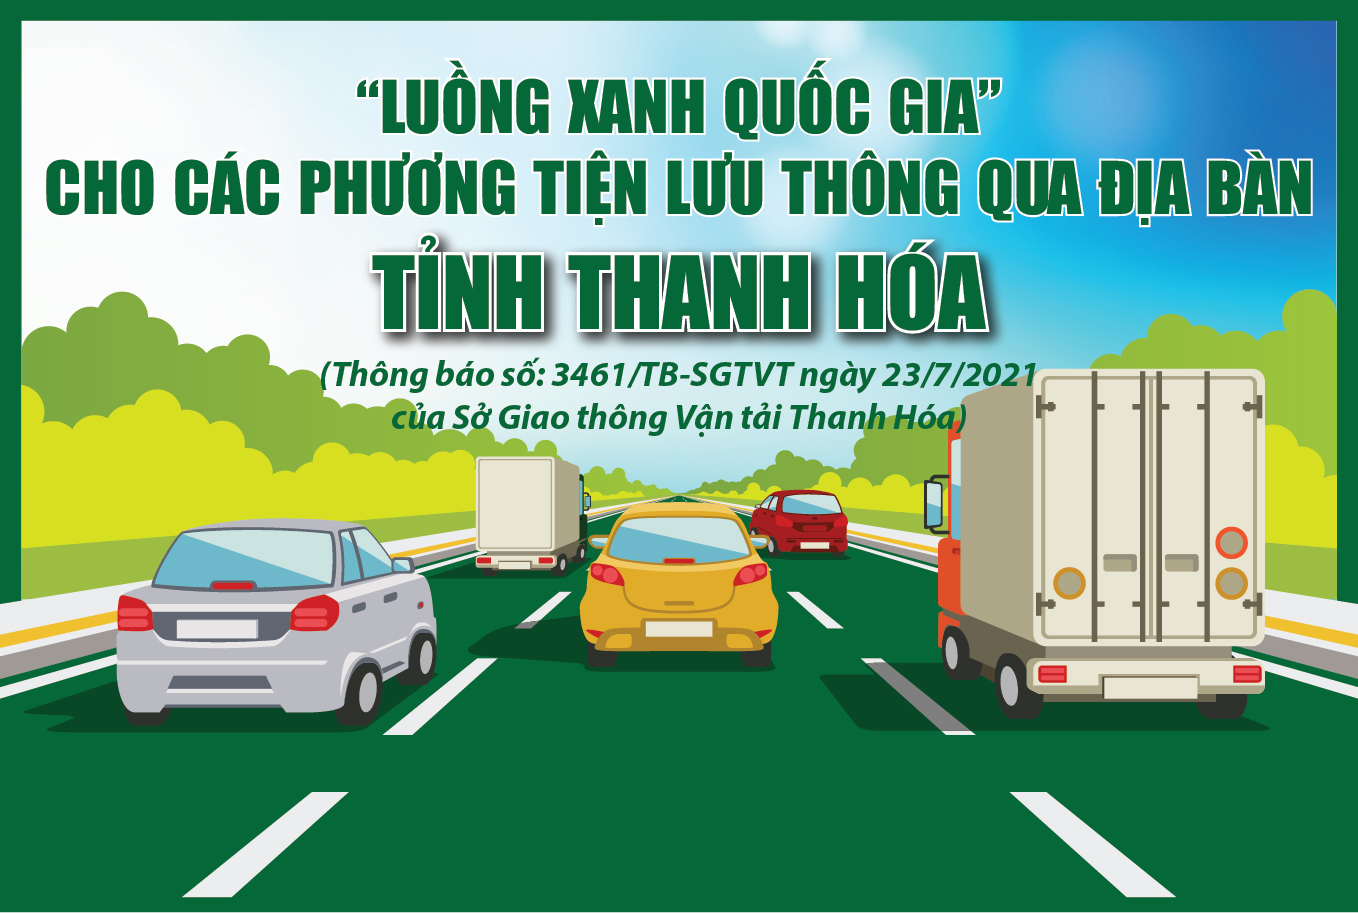 [Infographic] - Thông báo “Luồng xanh quốc gia” cho các phương tiện lưu thông qua địa bàn tỉnh Thanh Hóa